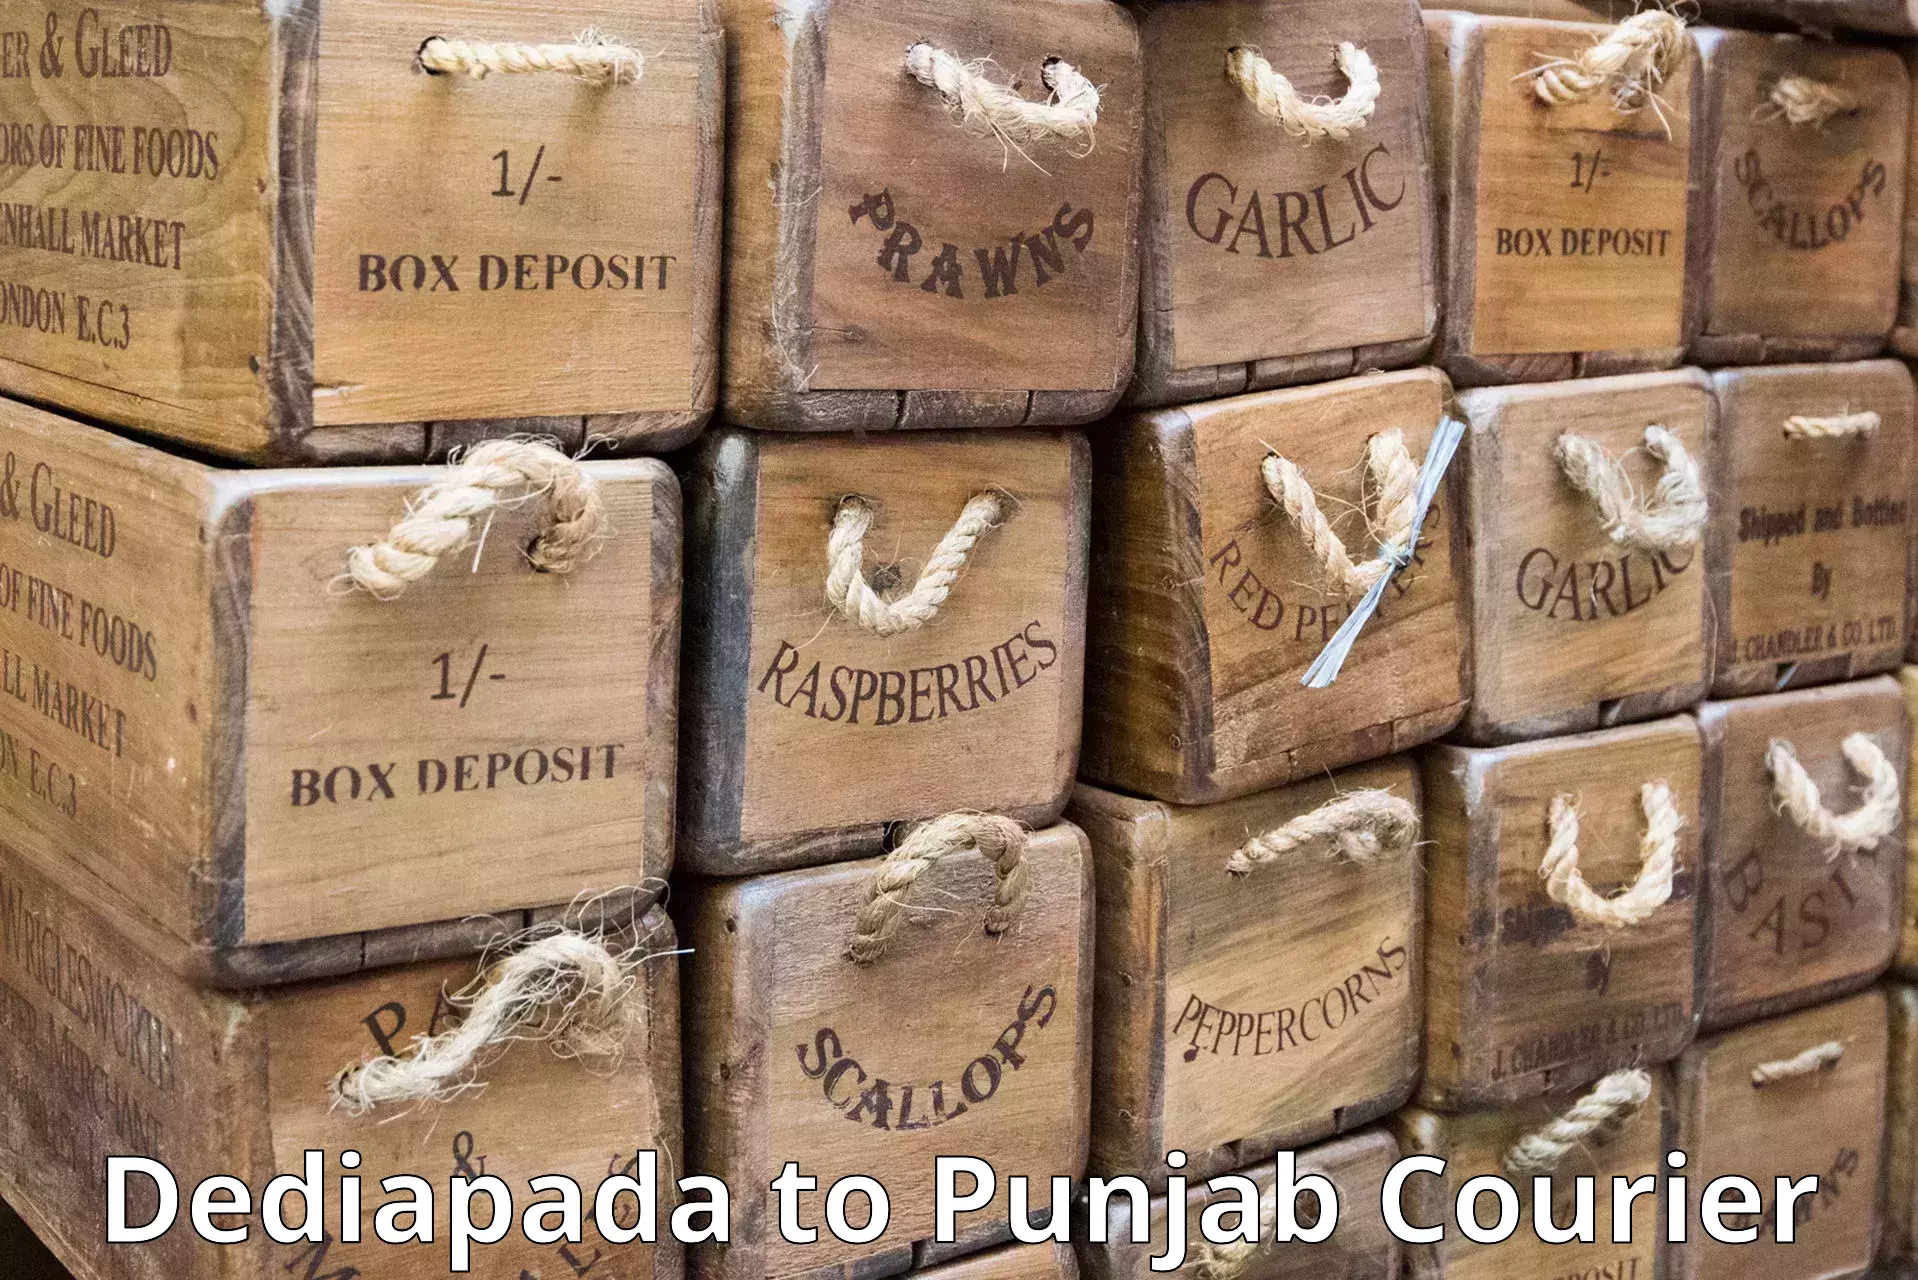 Discount courier rates Dediapada to Jalalabad